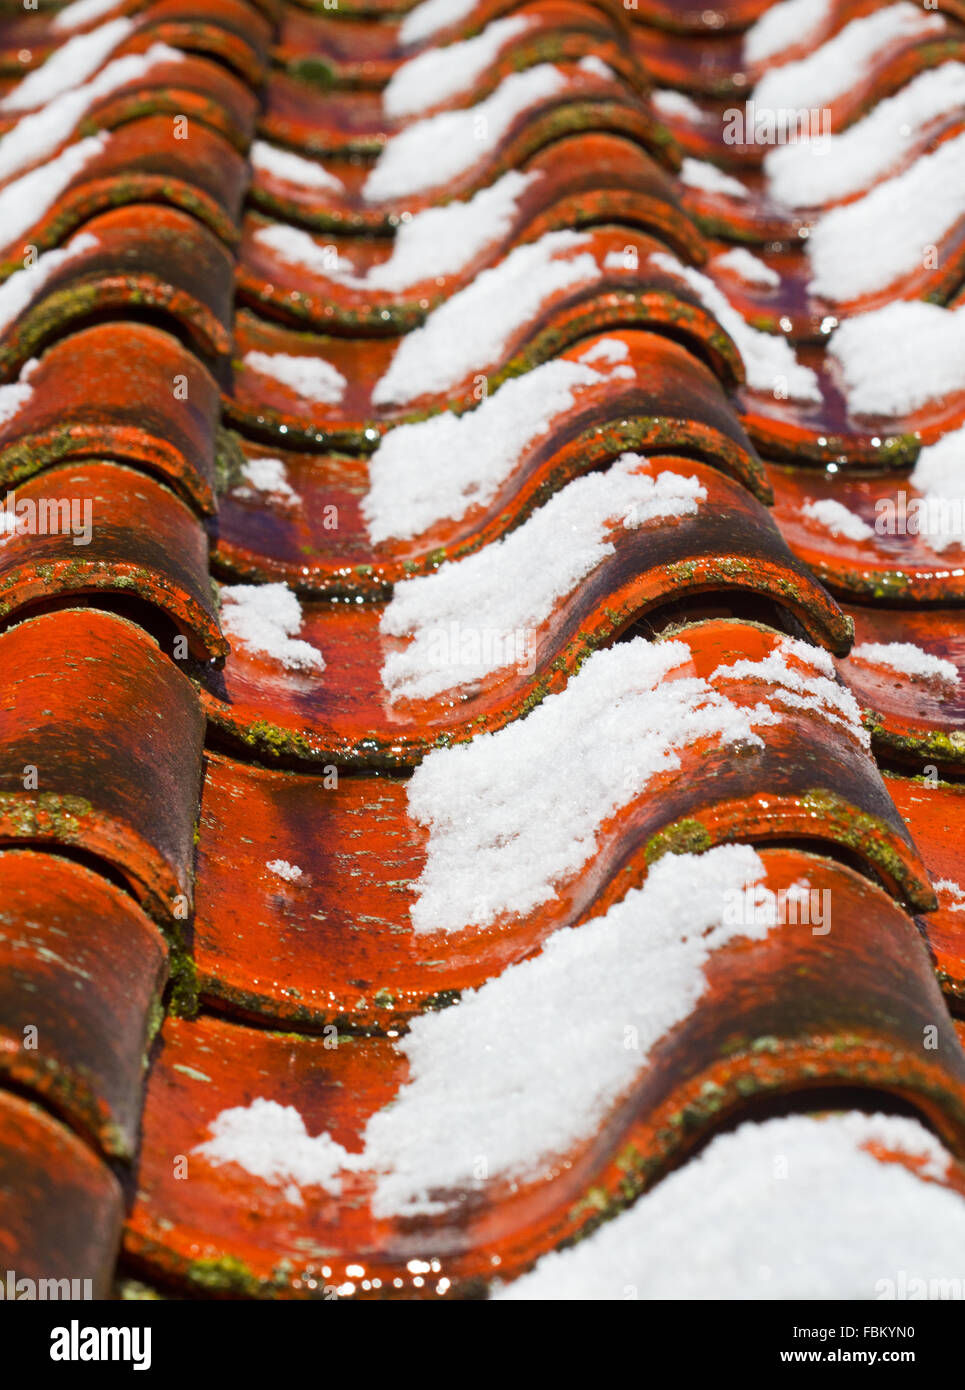 La fine della stagione invernale: fusione neve su un tetto con tegole di colore arancione Foto Stock